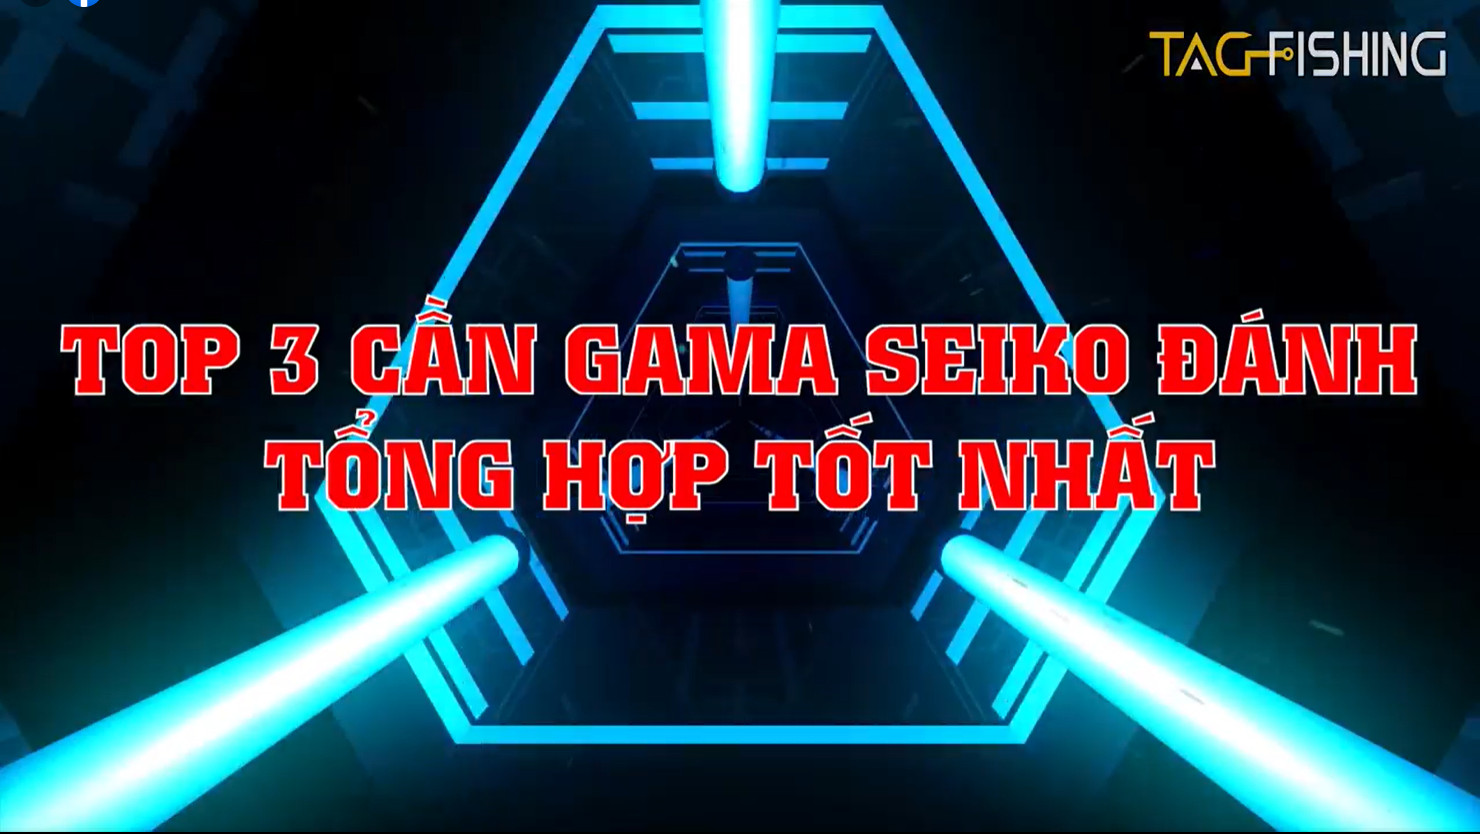 Top 3 cần tay đánh tổng hợp tốt nhất của Gama Seiko